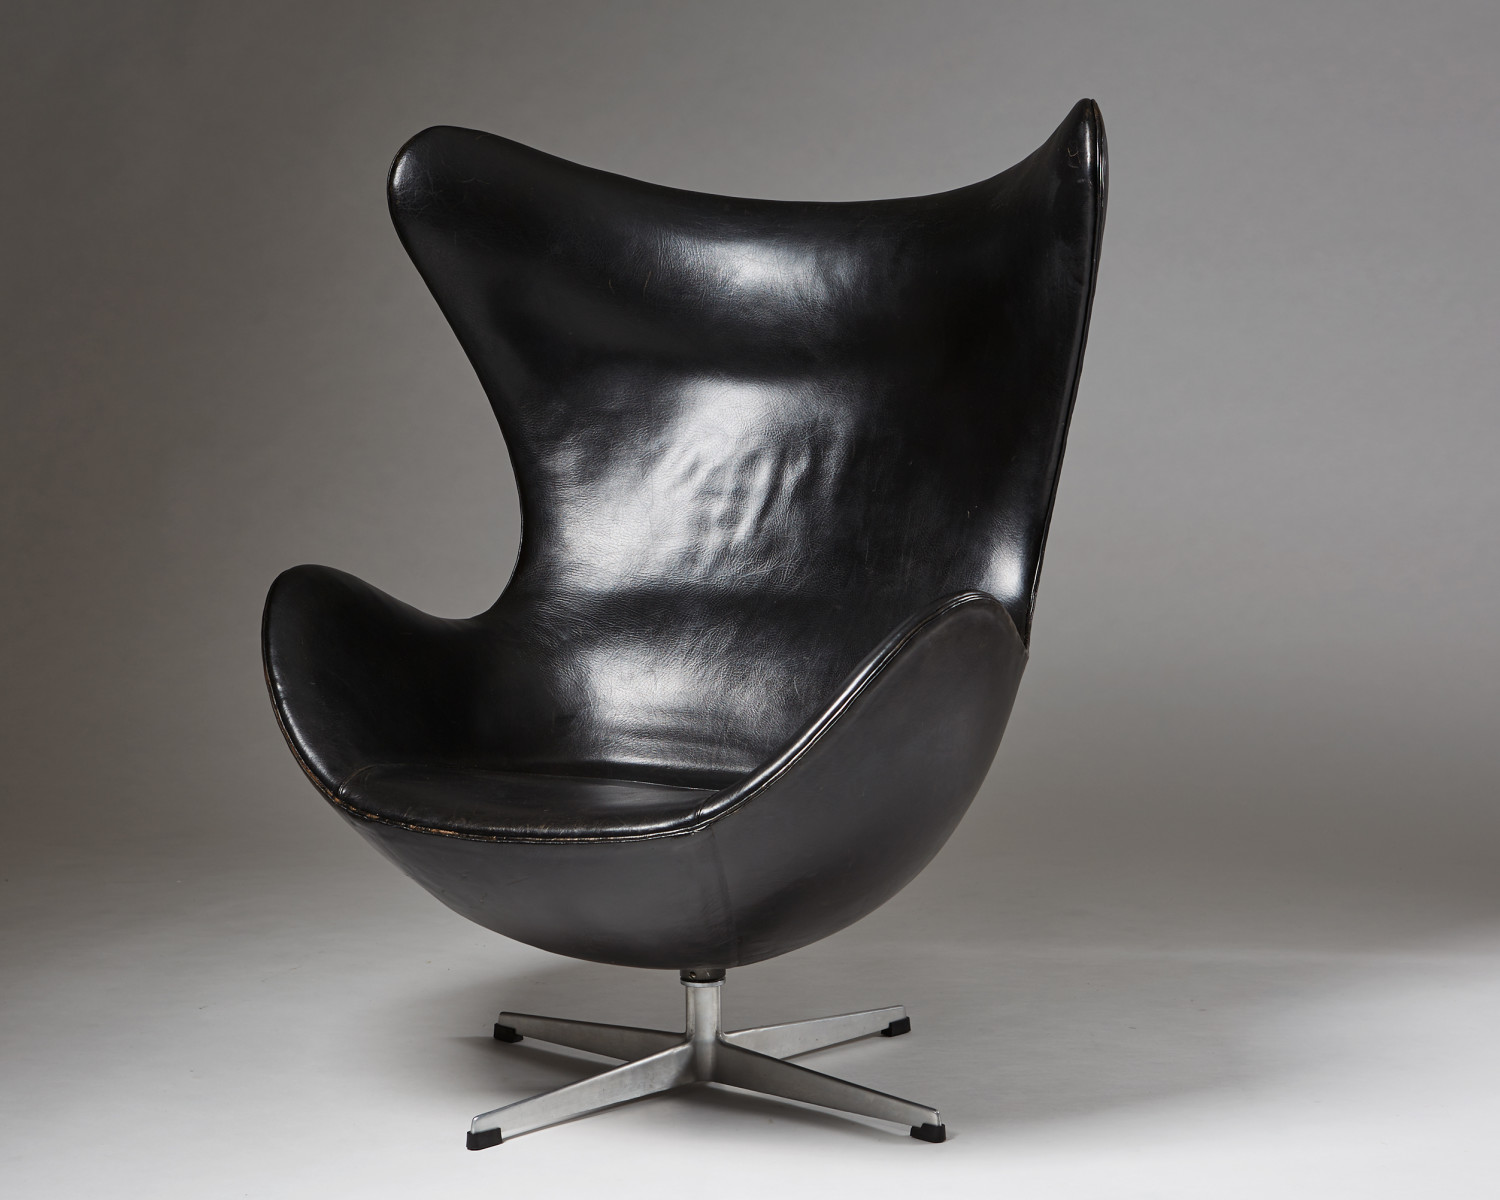 Armchair "Egg chair" designed by Arne Jacobsen for Fritz — Modernity